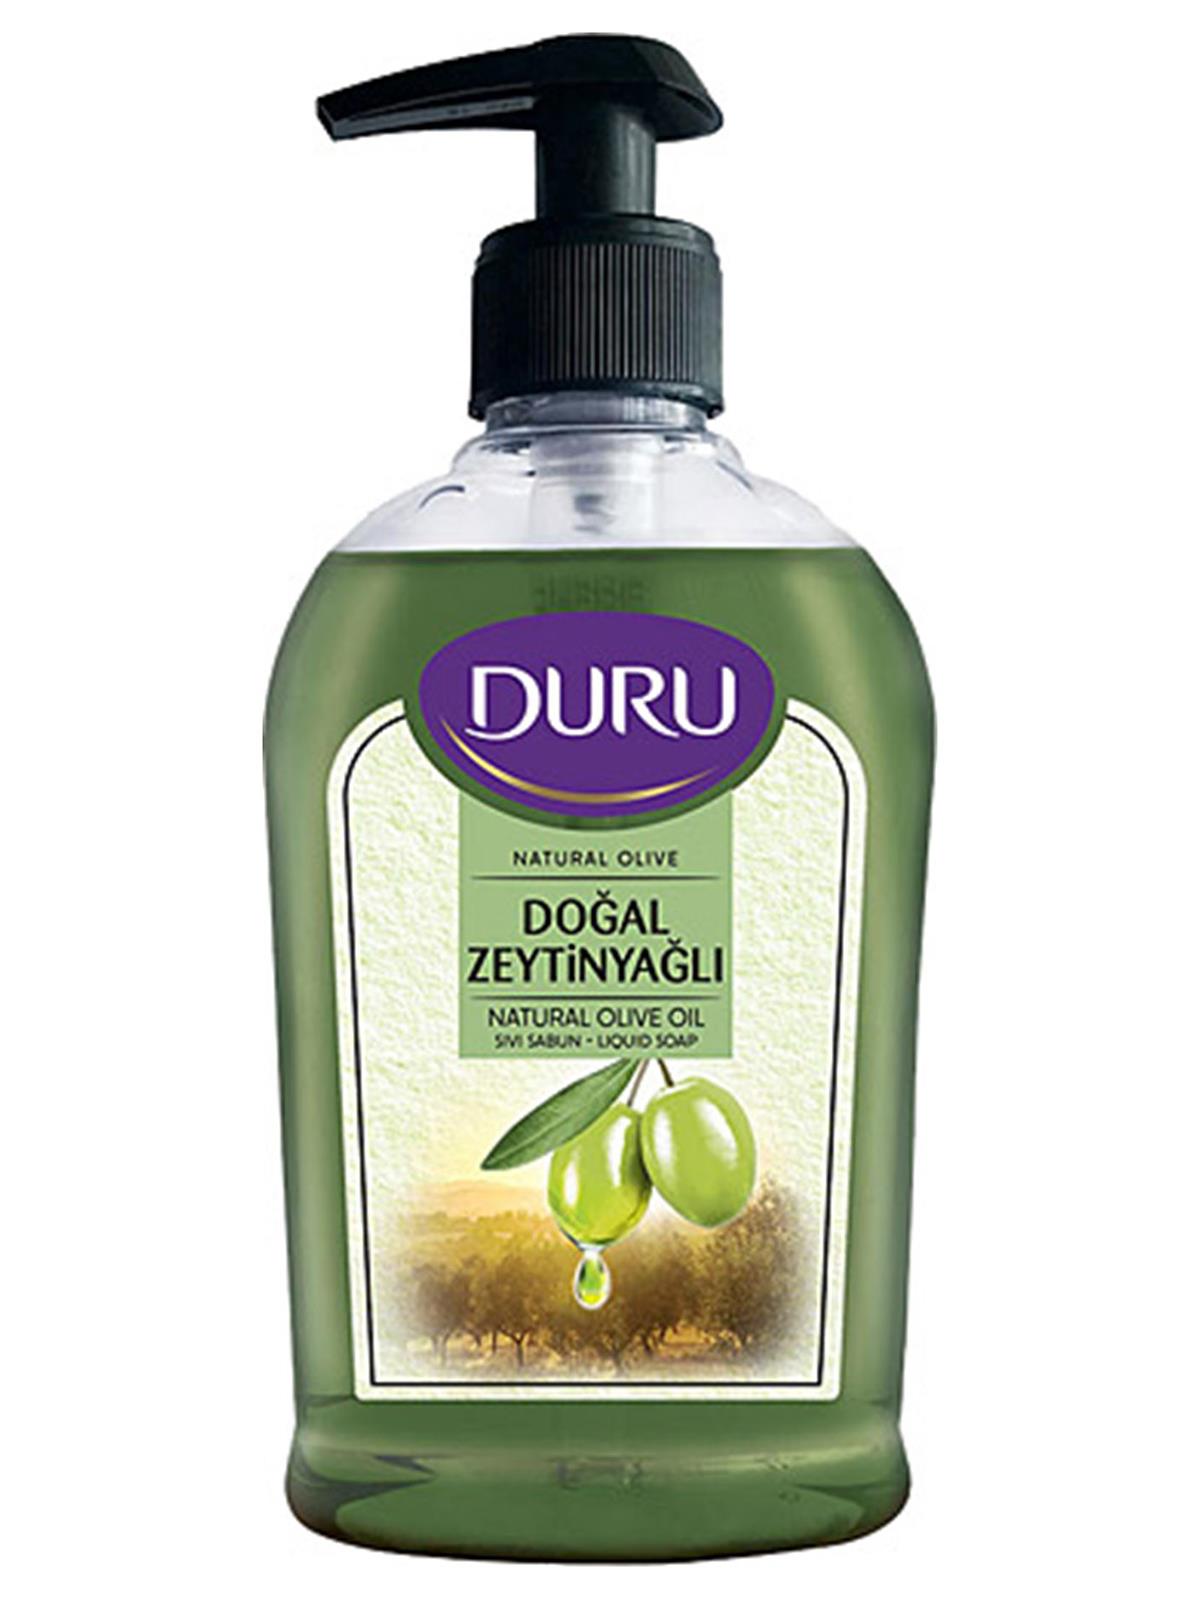 Duru Doğal Zeytinyağlı Sıvı Sabun 300 ml